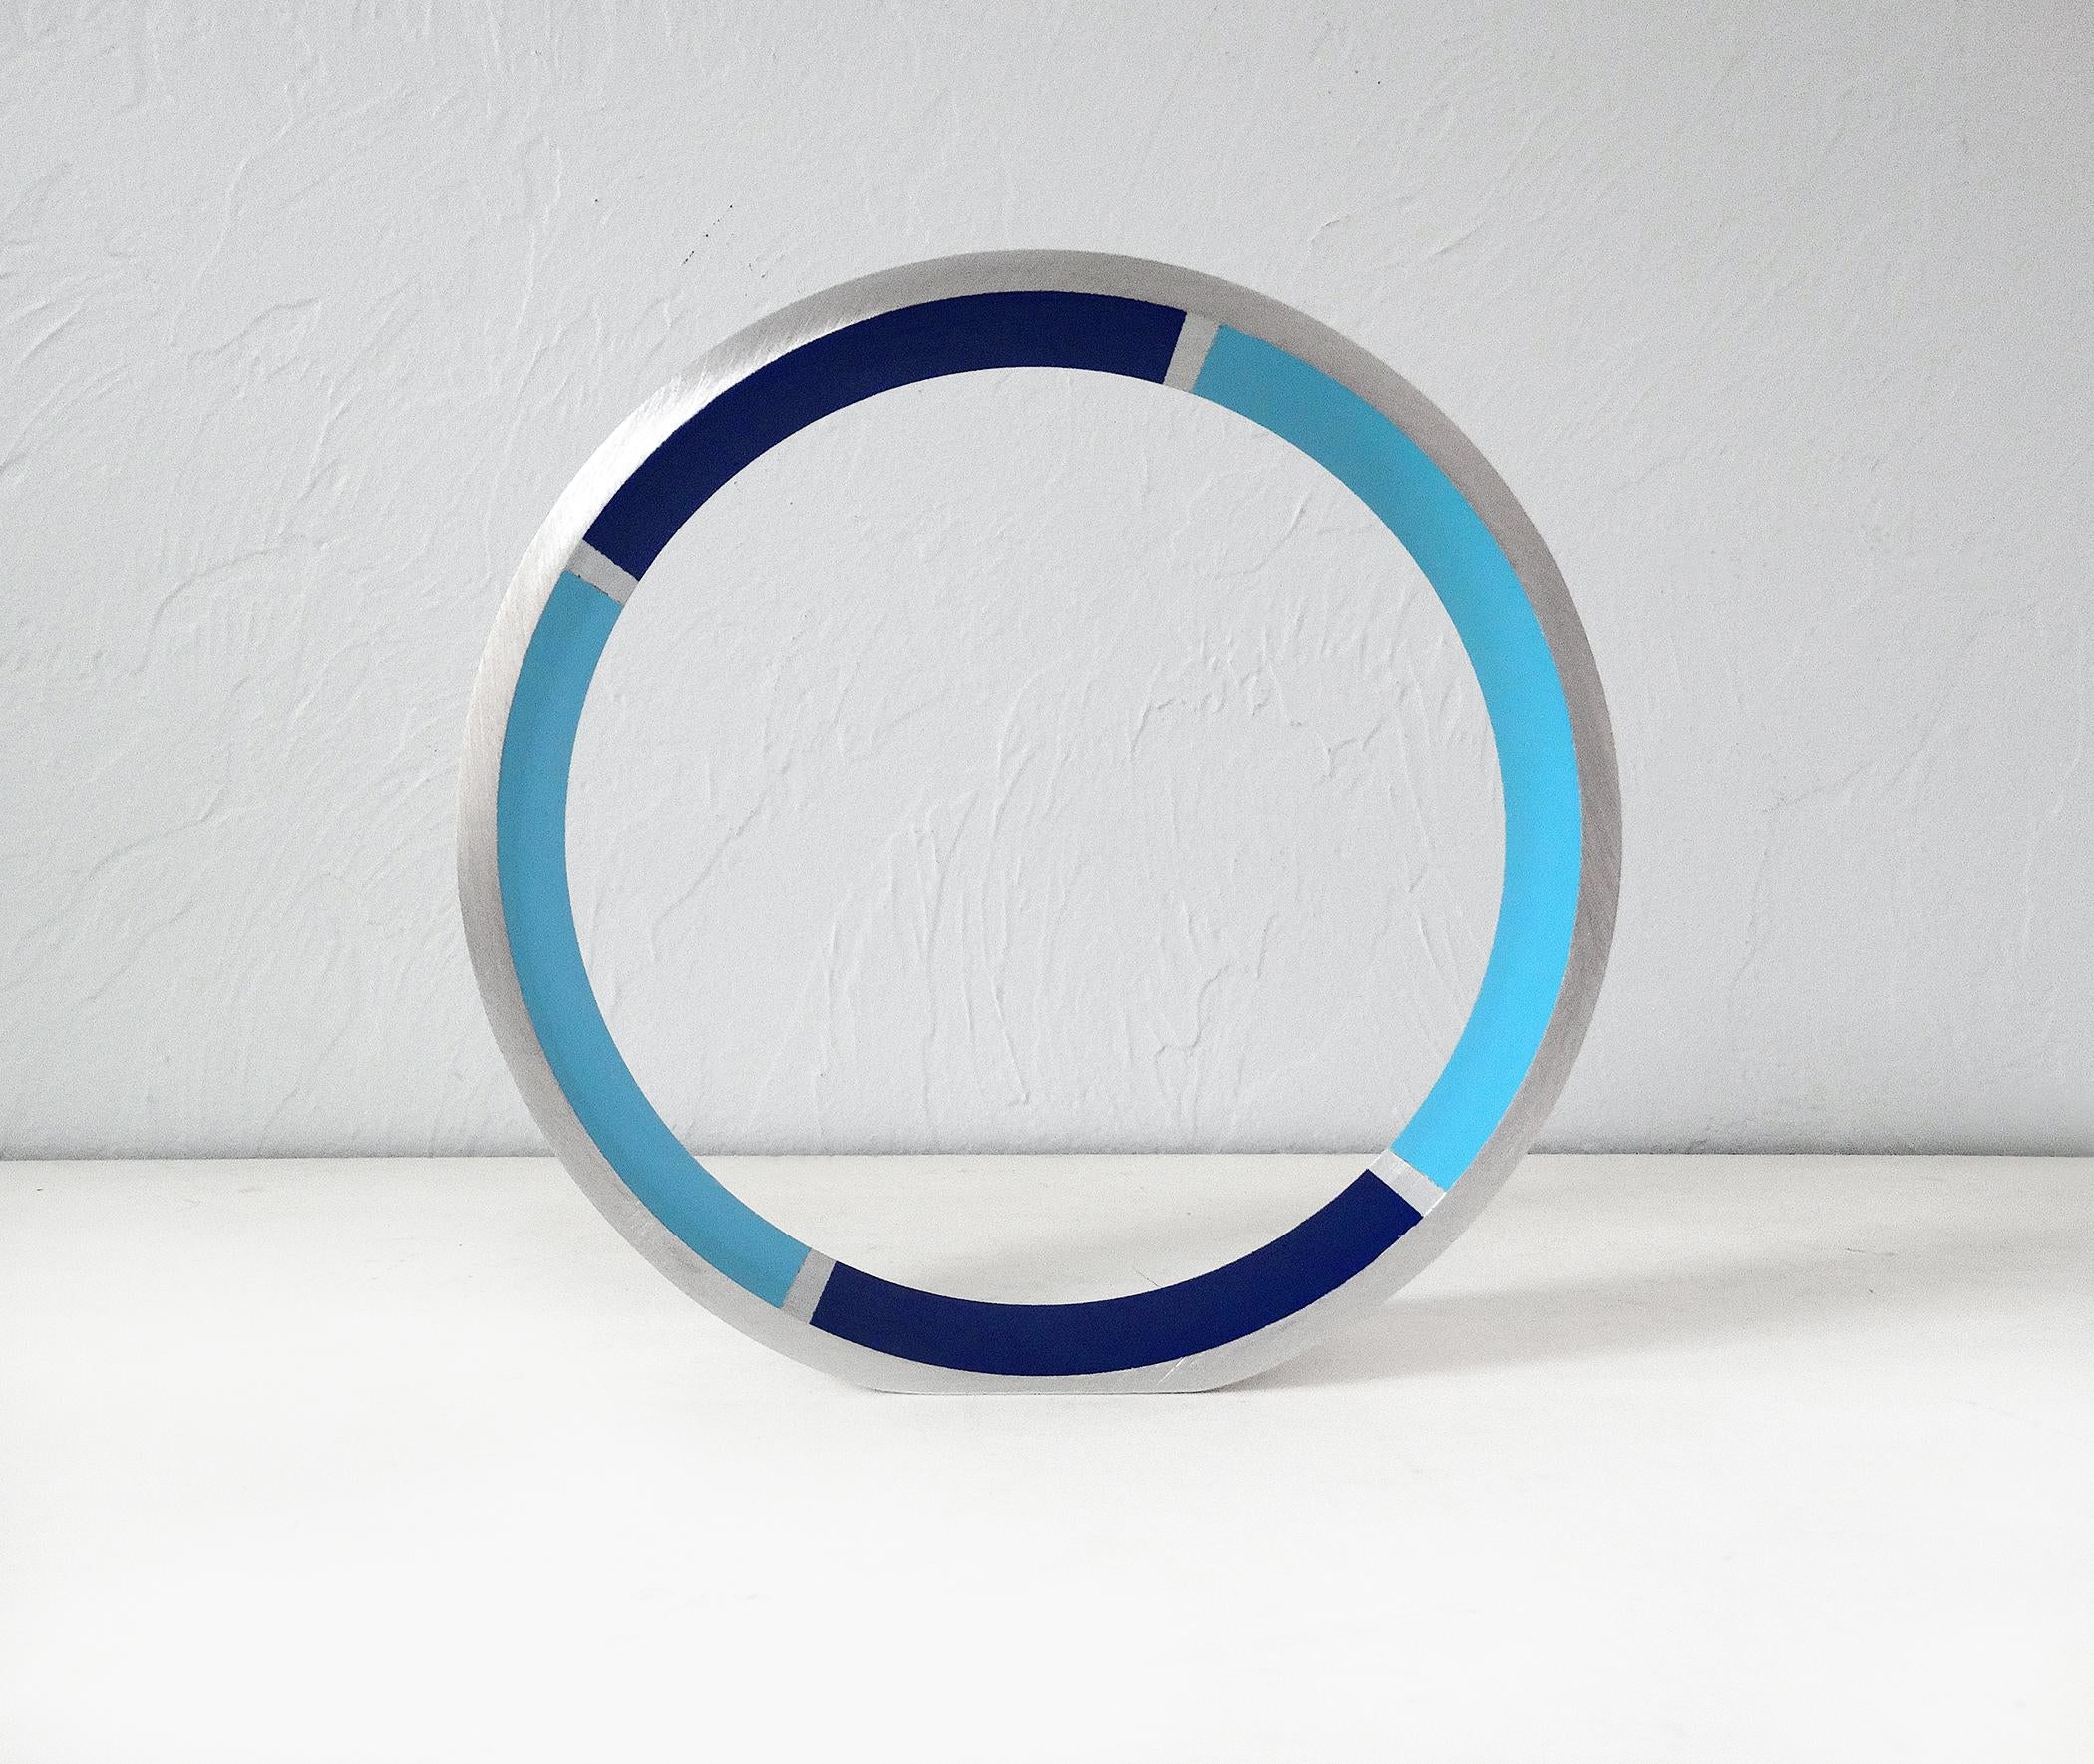 KX2: Ruth Avra + Dana Kleinman Abstract Sculpture - Transection (blue/dark blue)